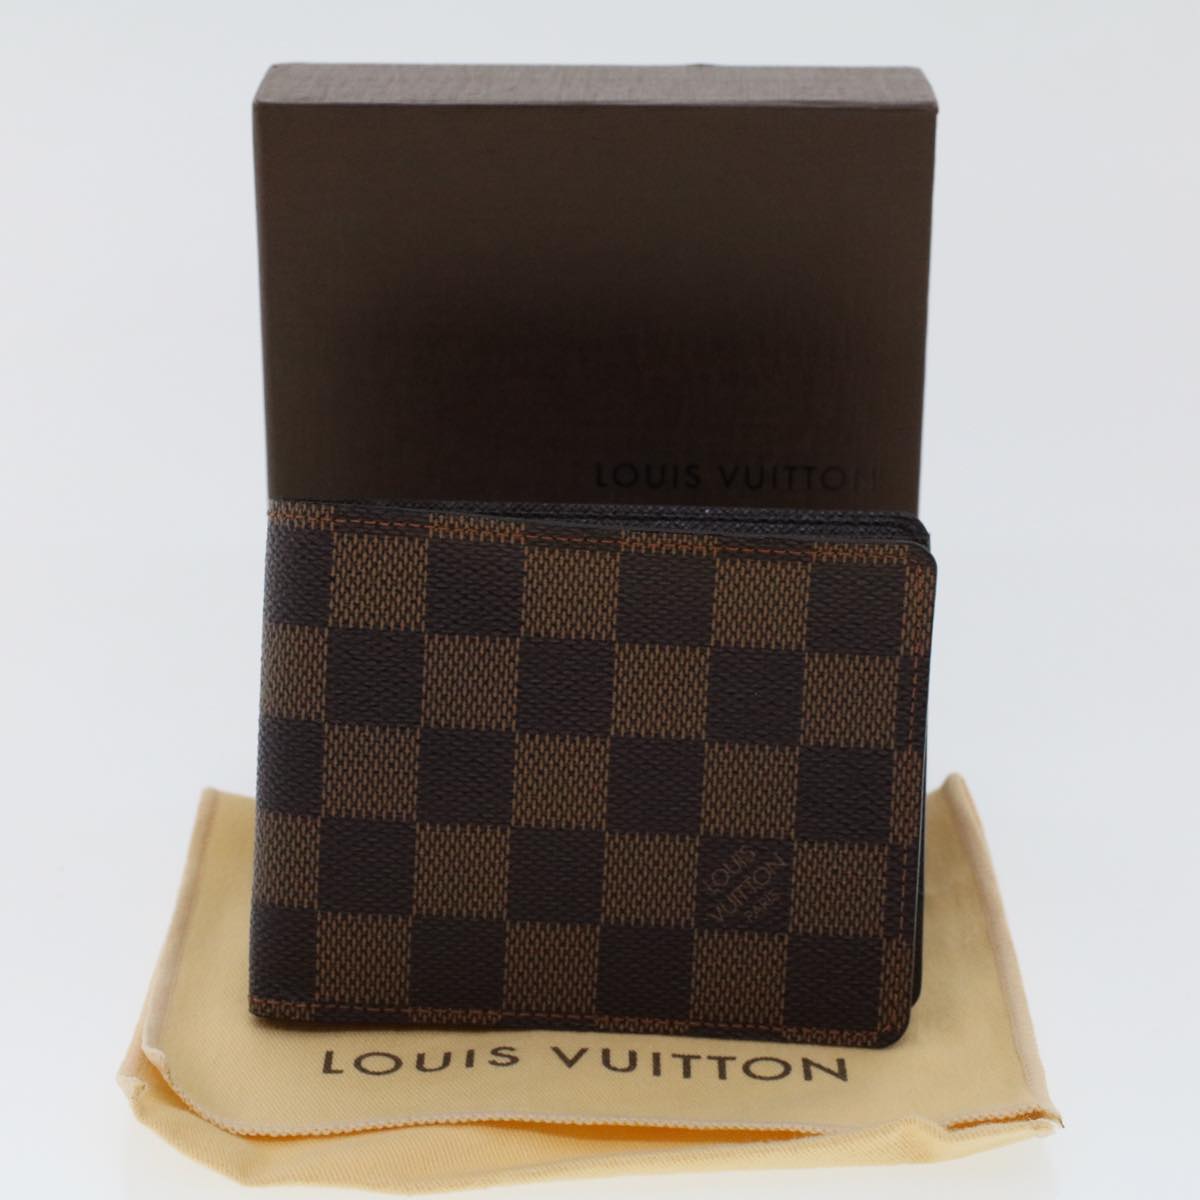 Louis Vuitton PORTEFEUILLE MULTIPLE